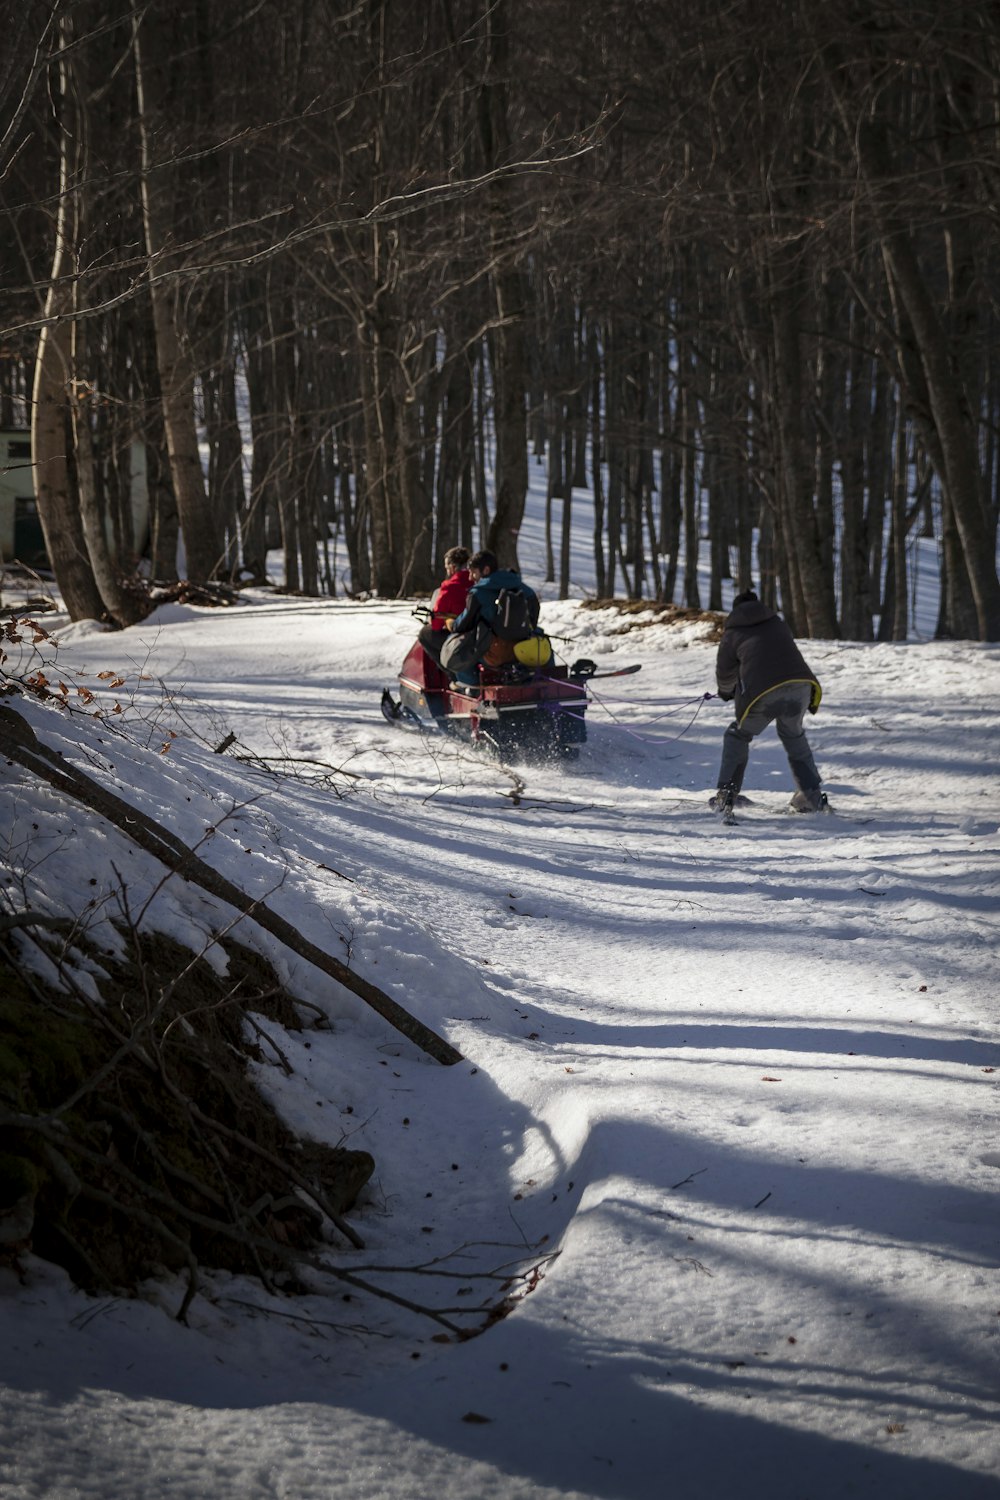 Personen, die tagsüber auf schneebedecktem Boden mit dem Skilift fahren